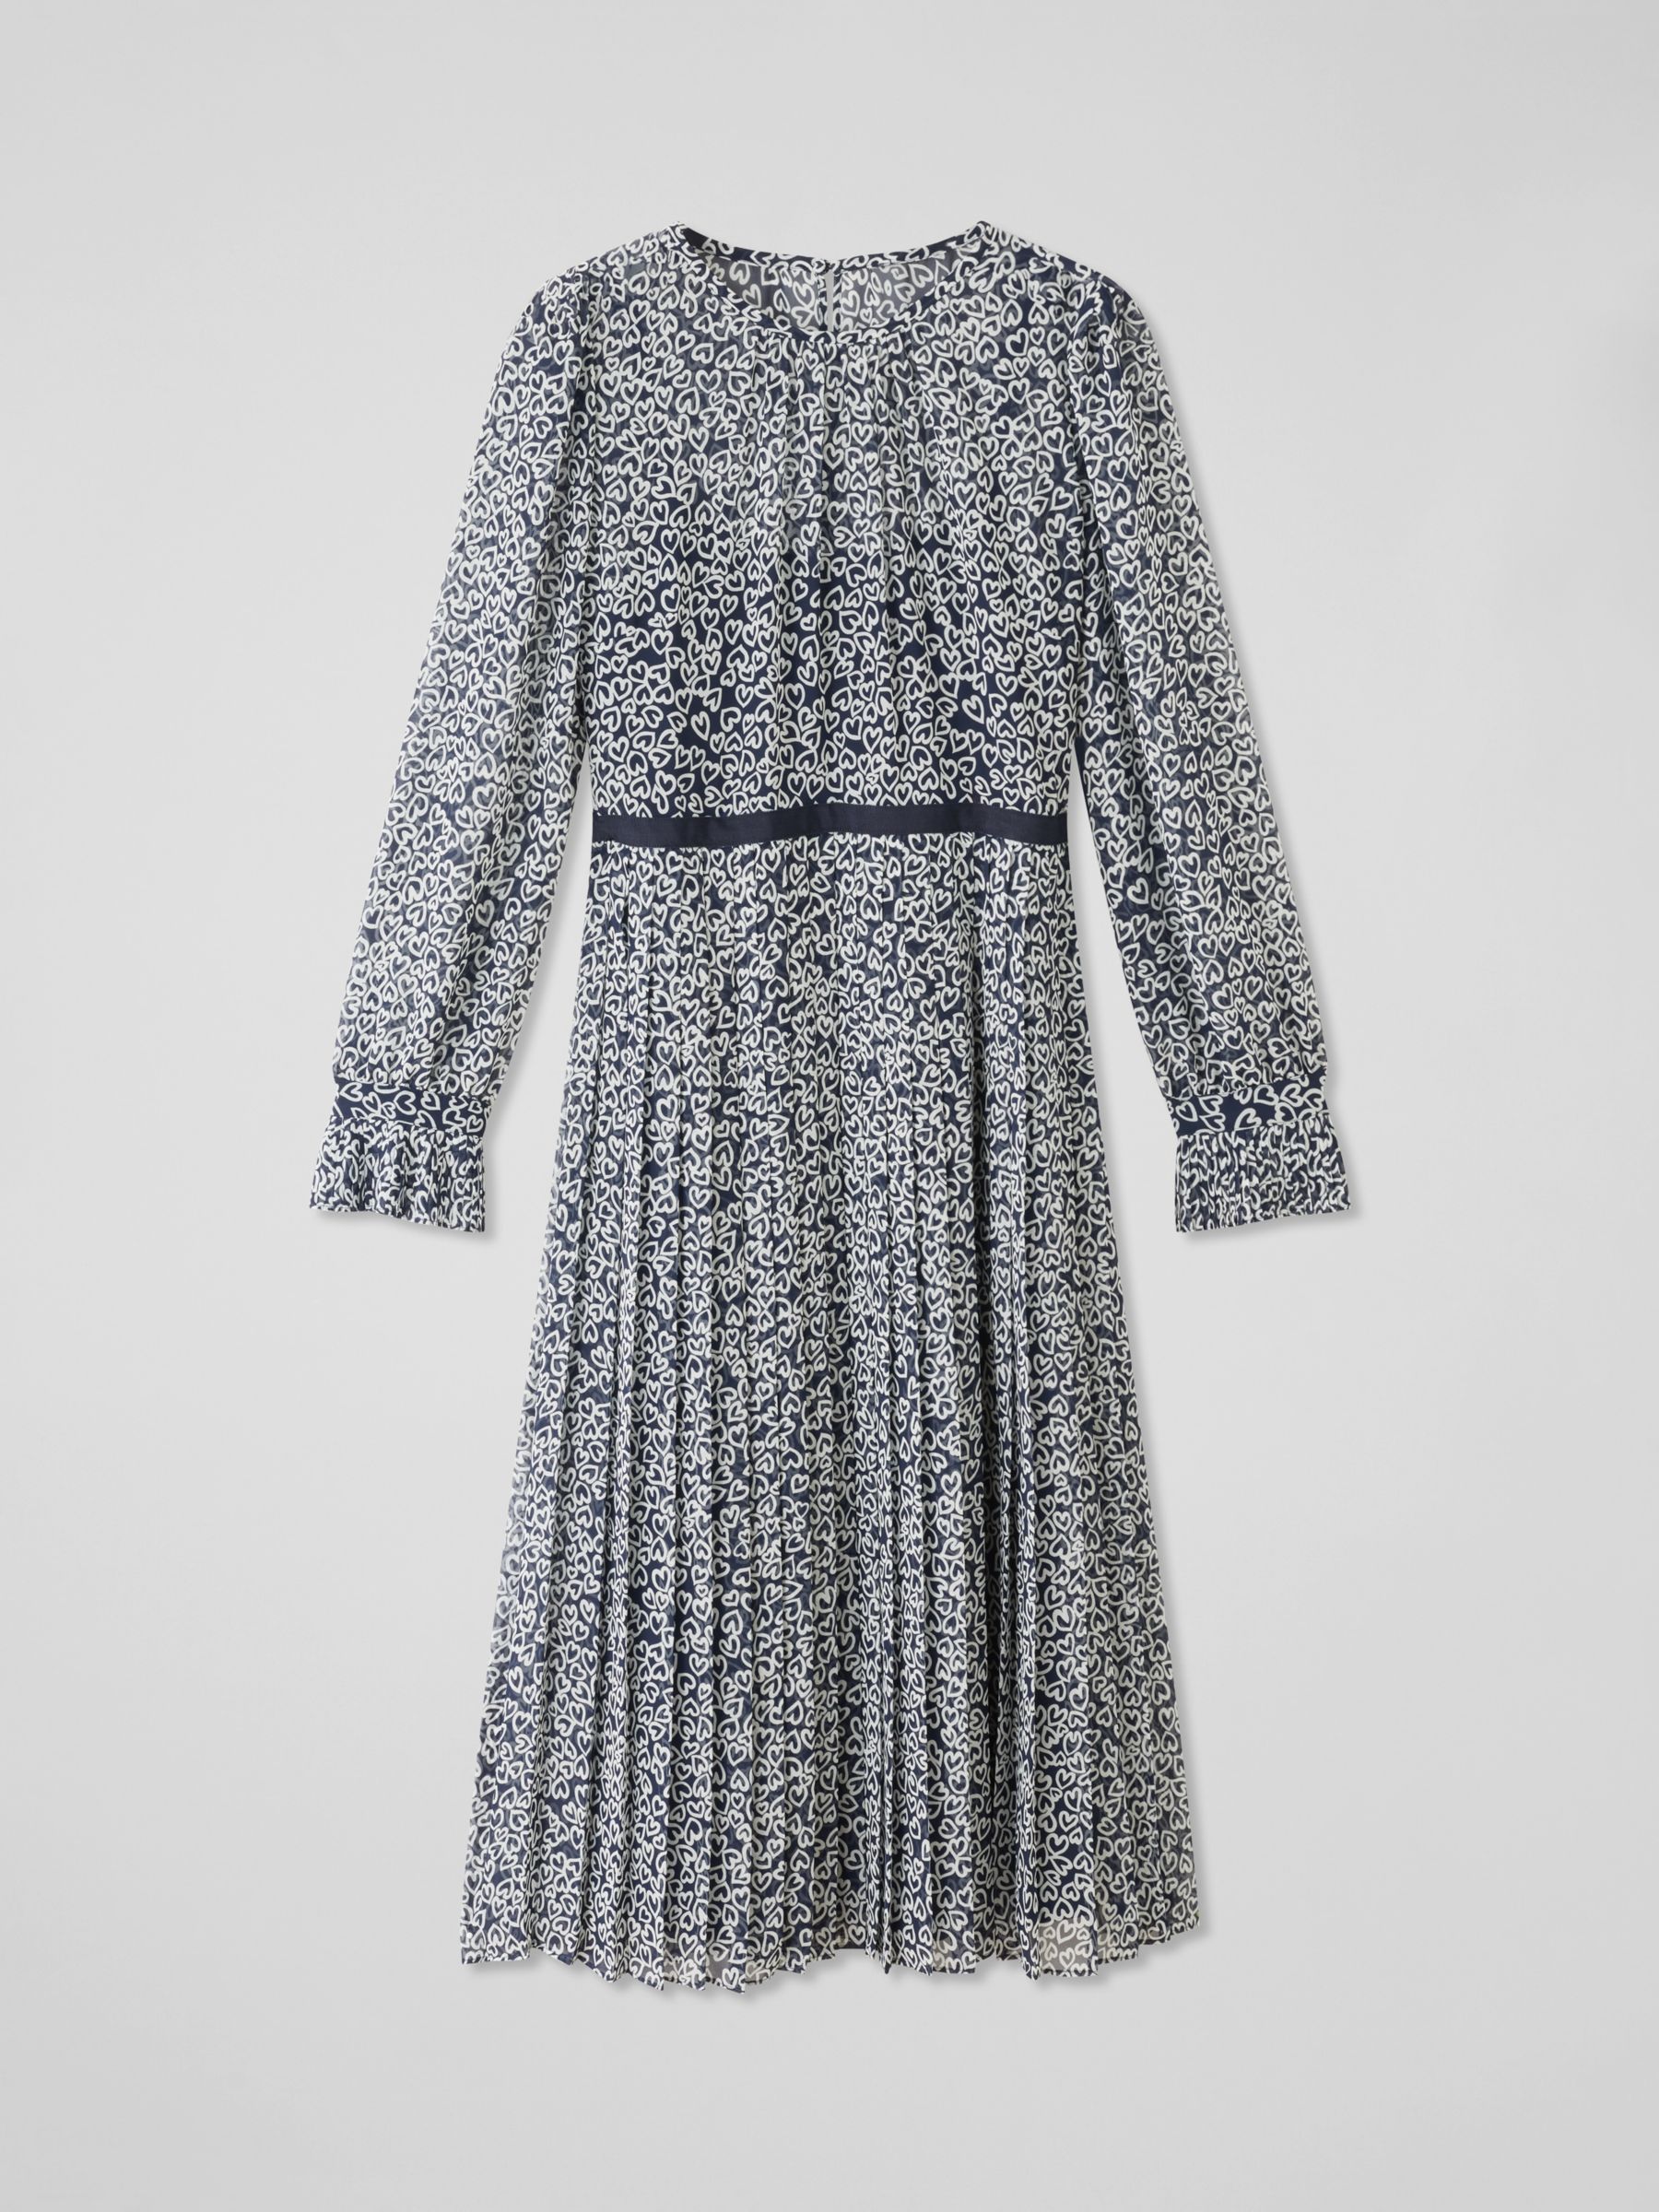 L.K.Bennett Estelle Heart Print Midi Dress, Navy/Multi, 18